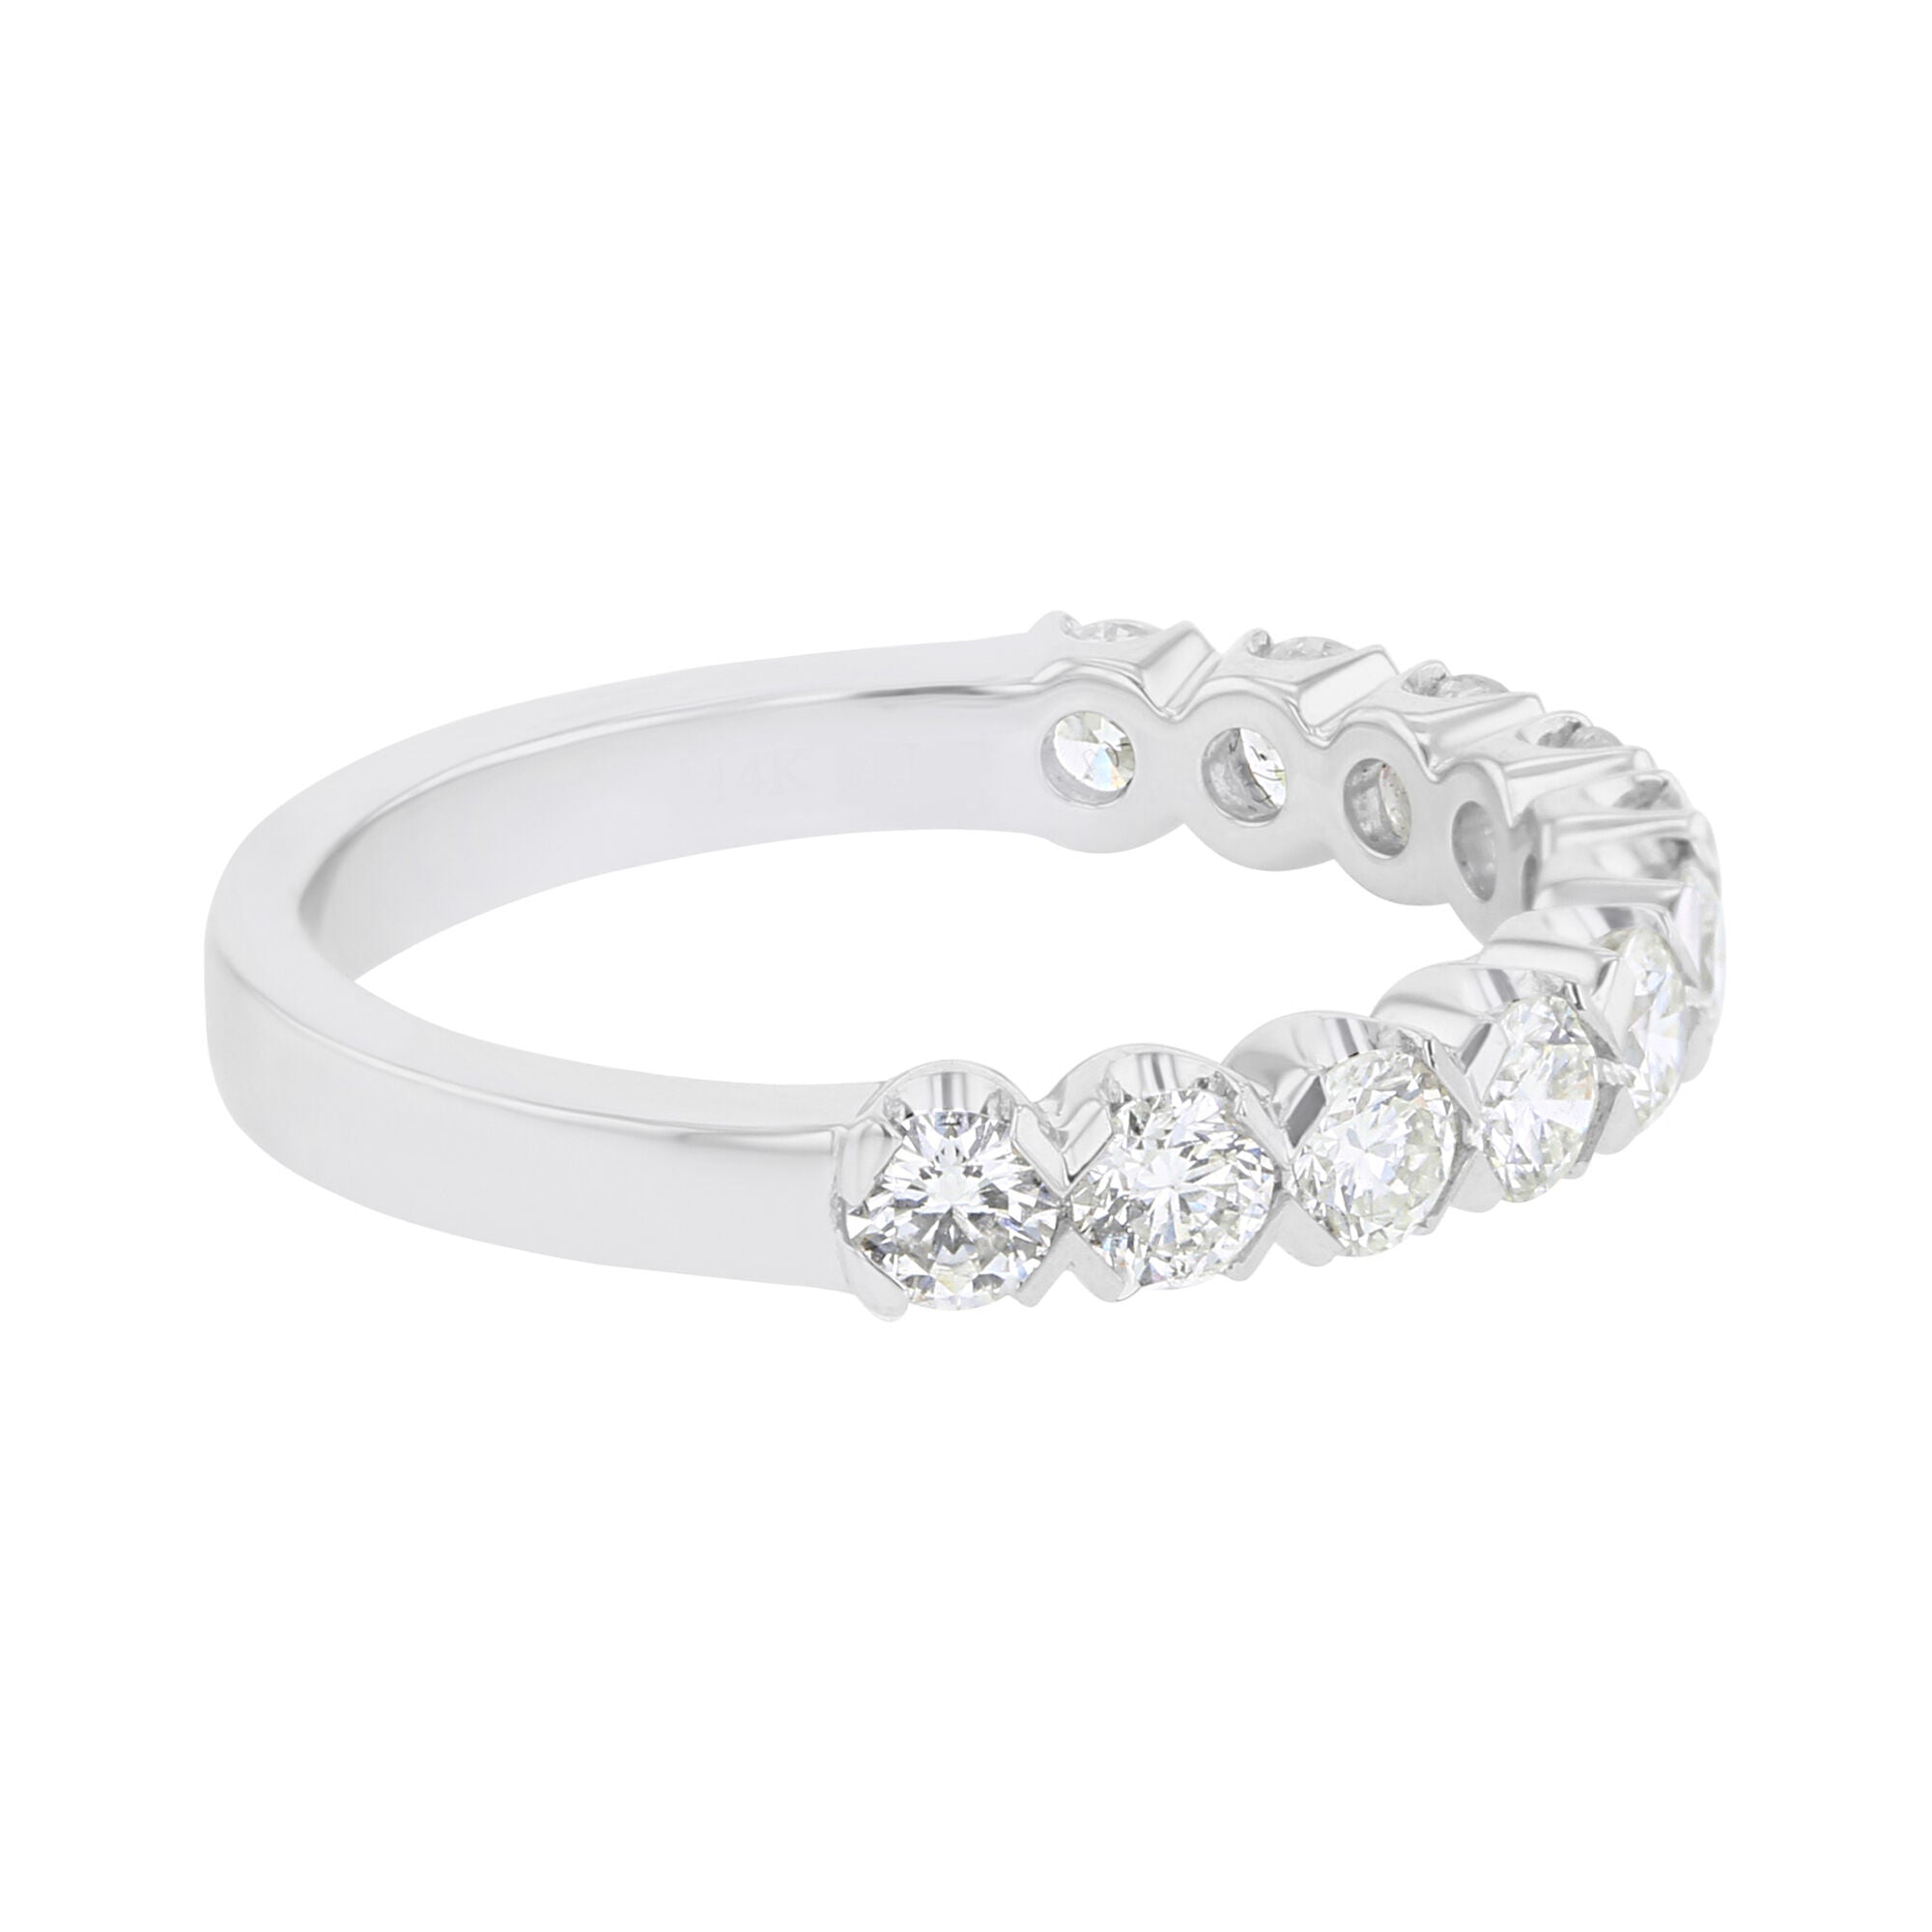 Toni Diamond Wedding Ring 1ct